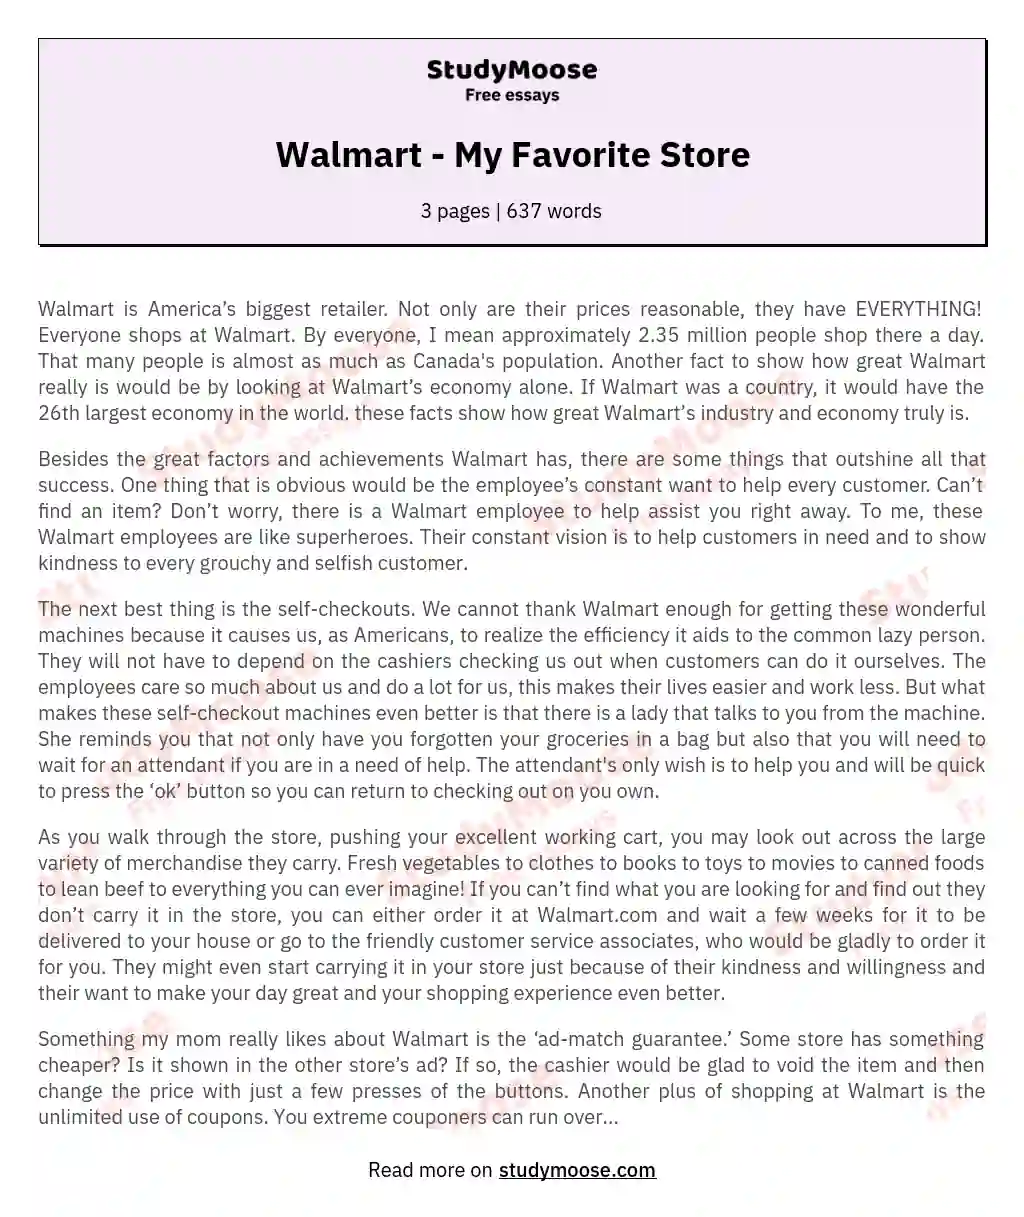 Walmart - My Favorite Store essay